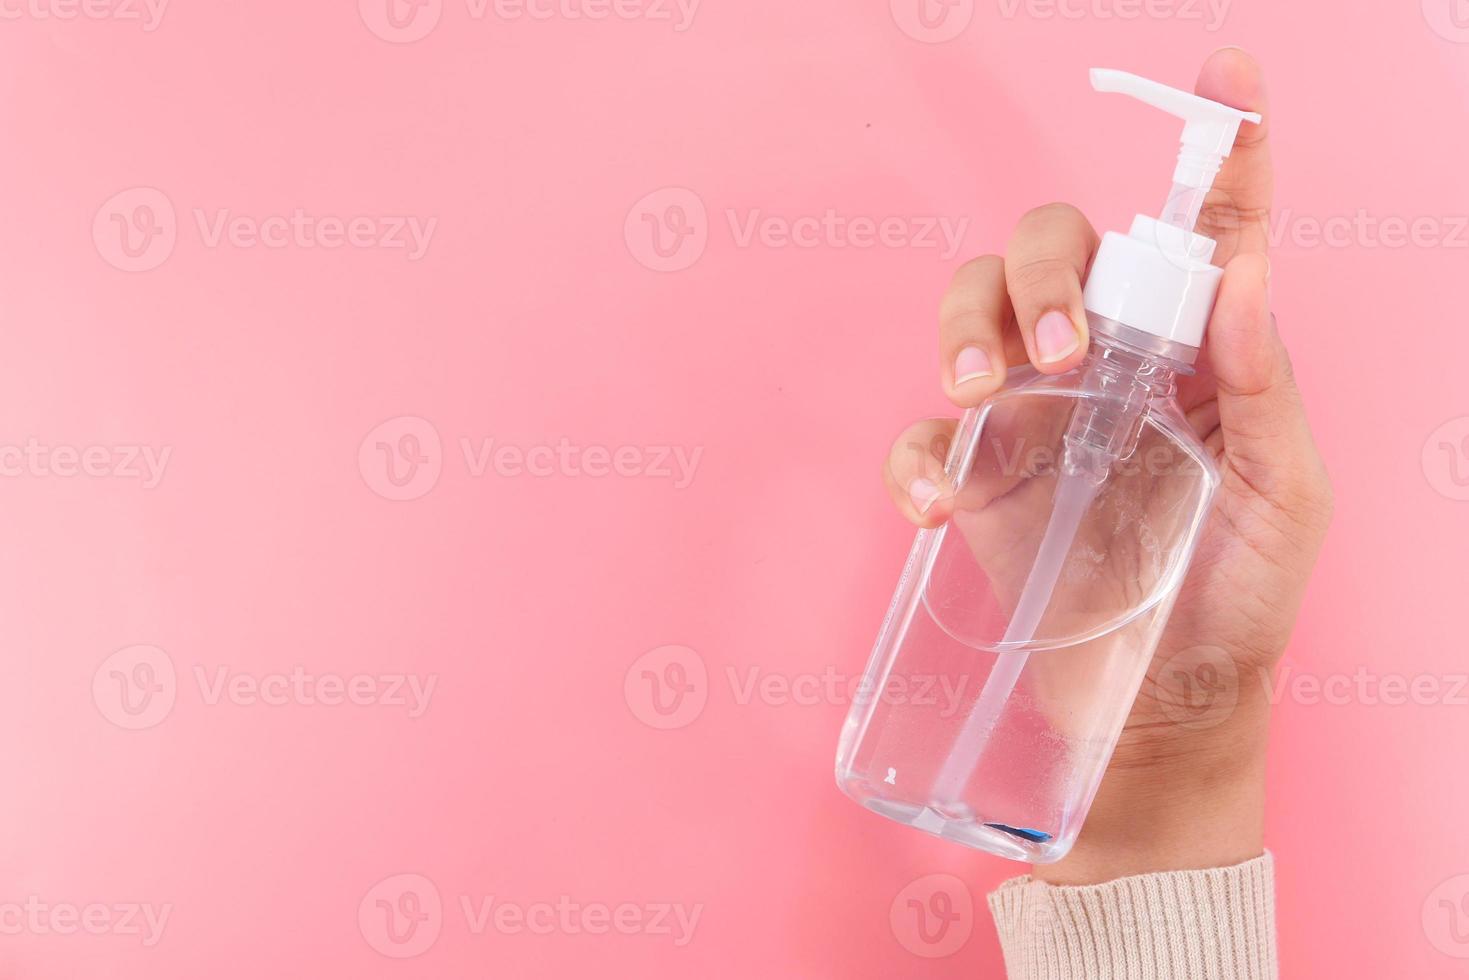 Mano de mujer con gel desinfectante para prevenir virus, con espacio de copia foto